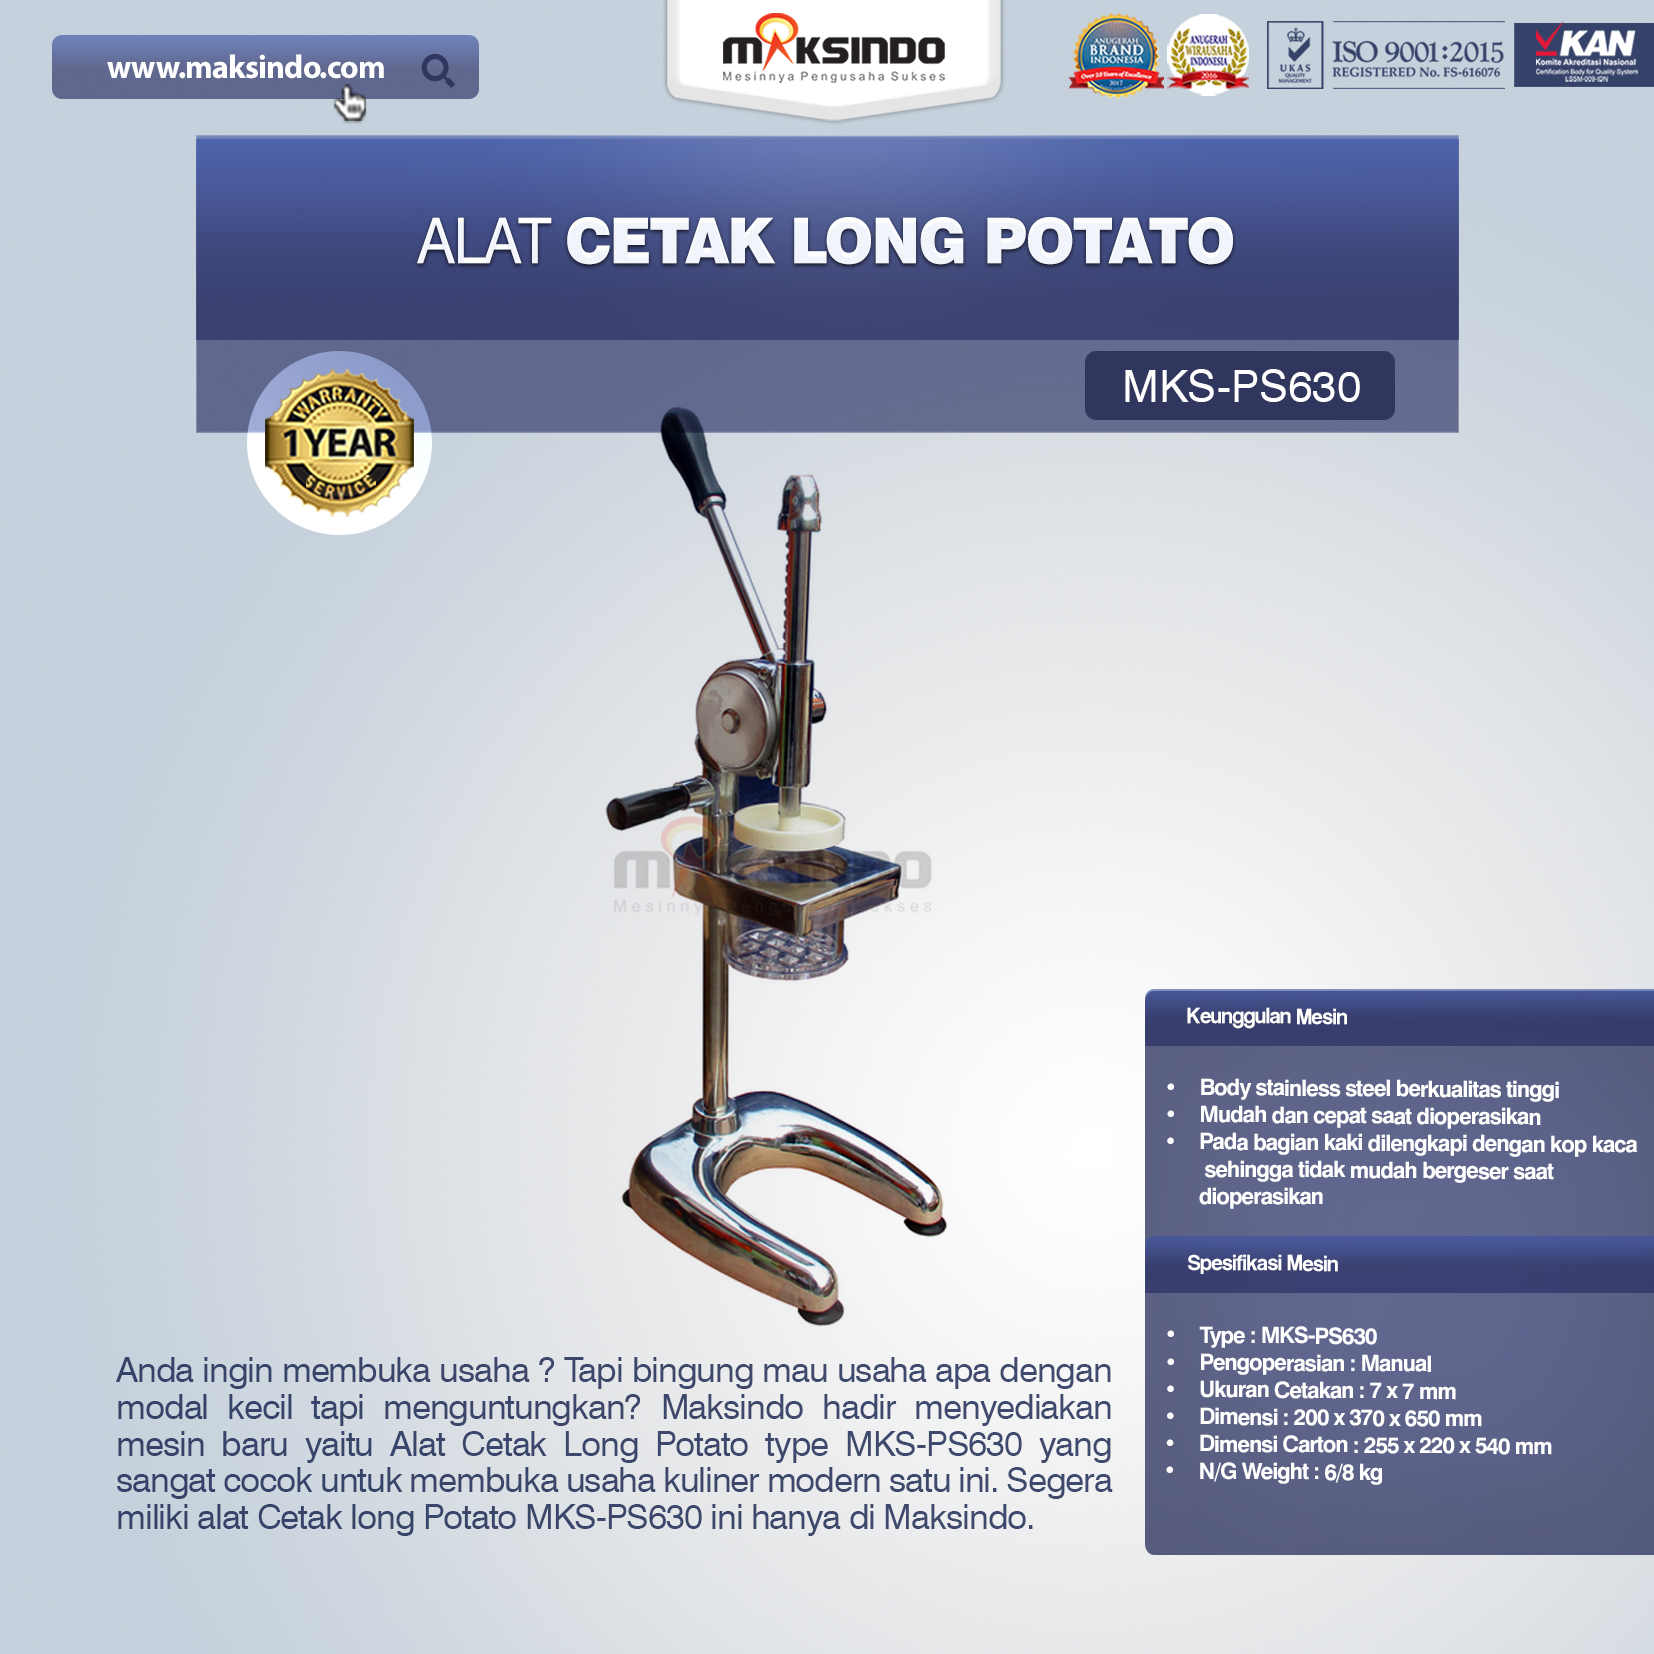 Jual Alat Cetak Long Potato MKS-PS630 di Yogyakarta